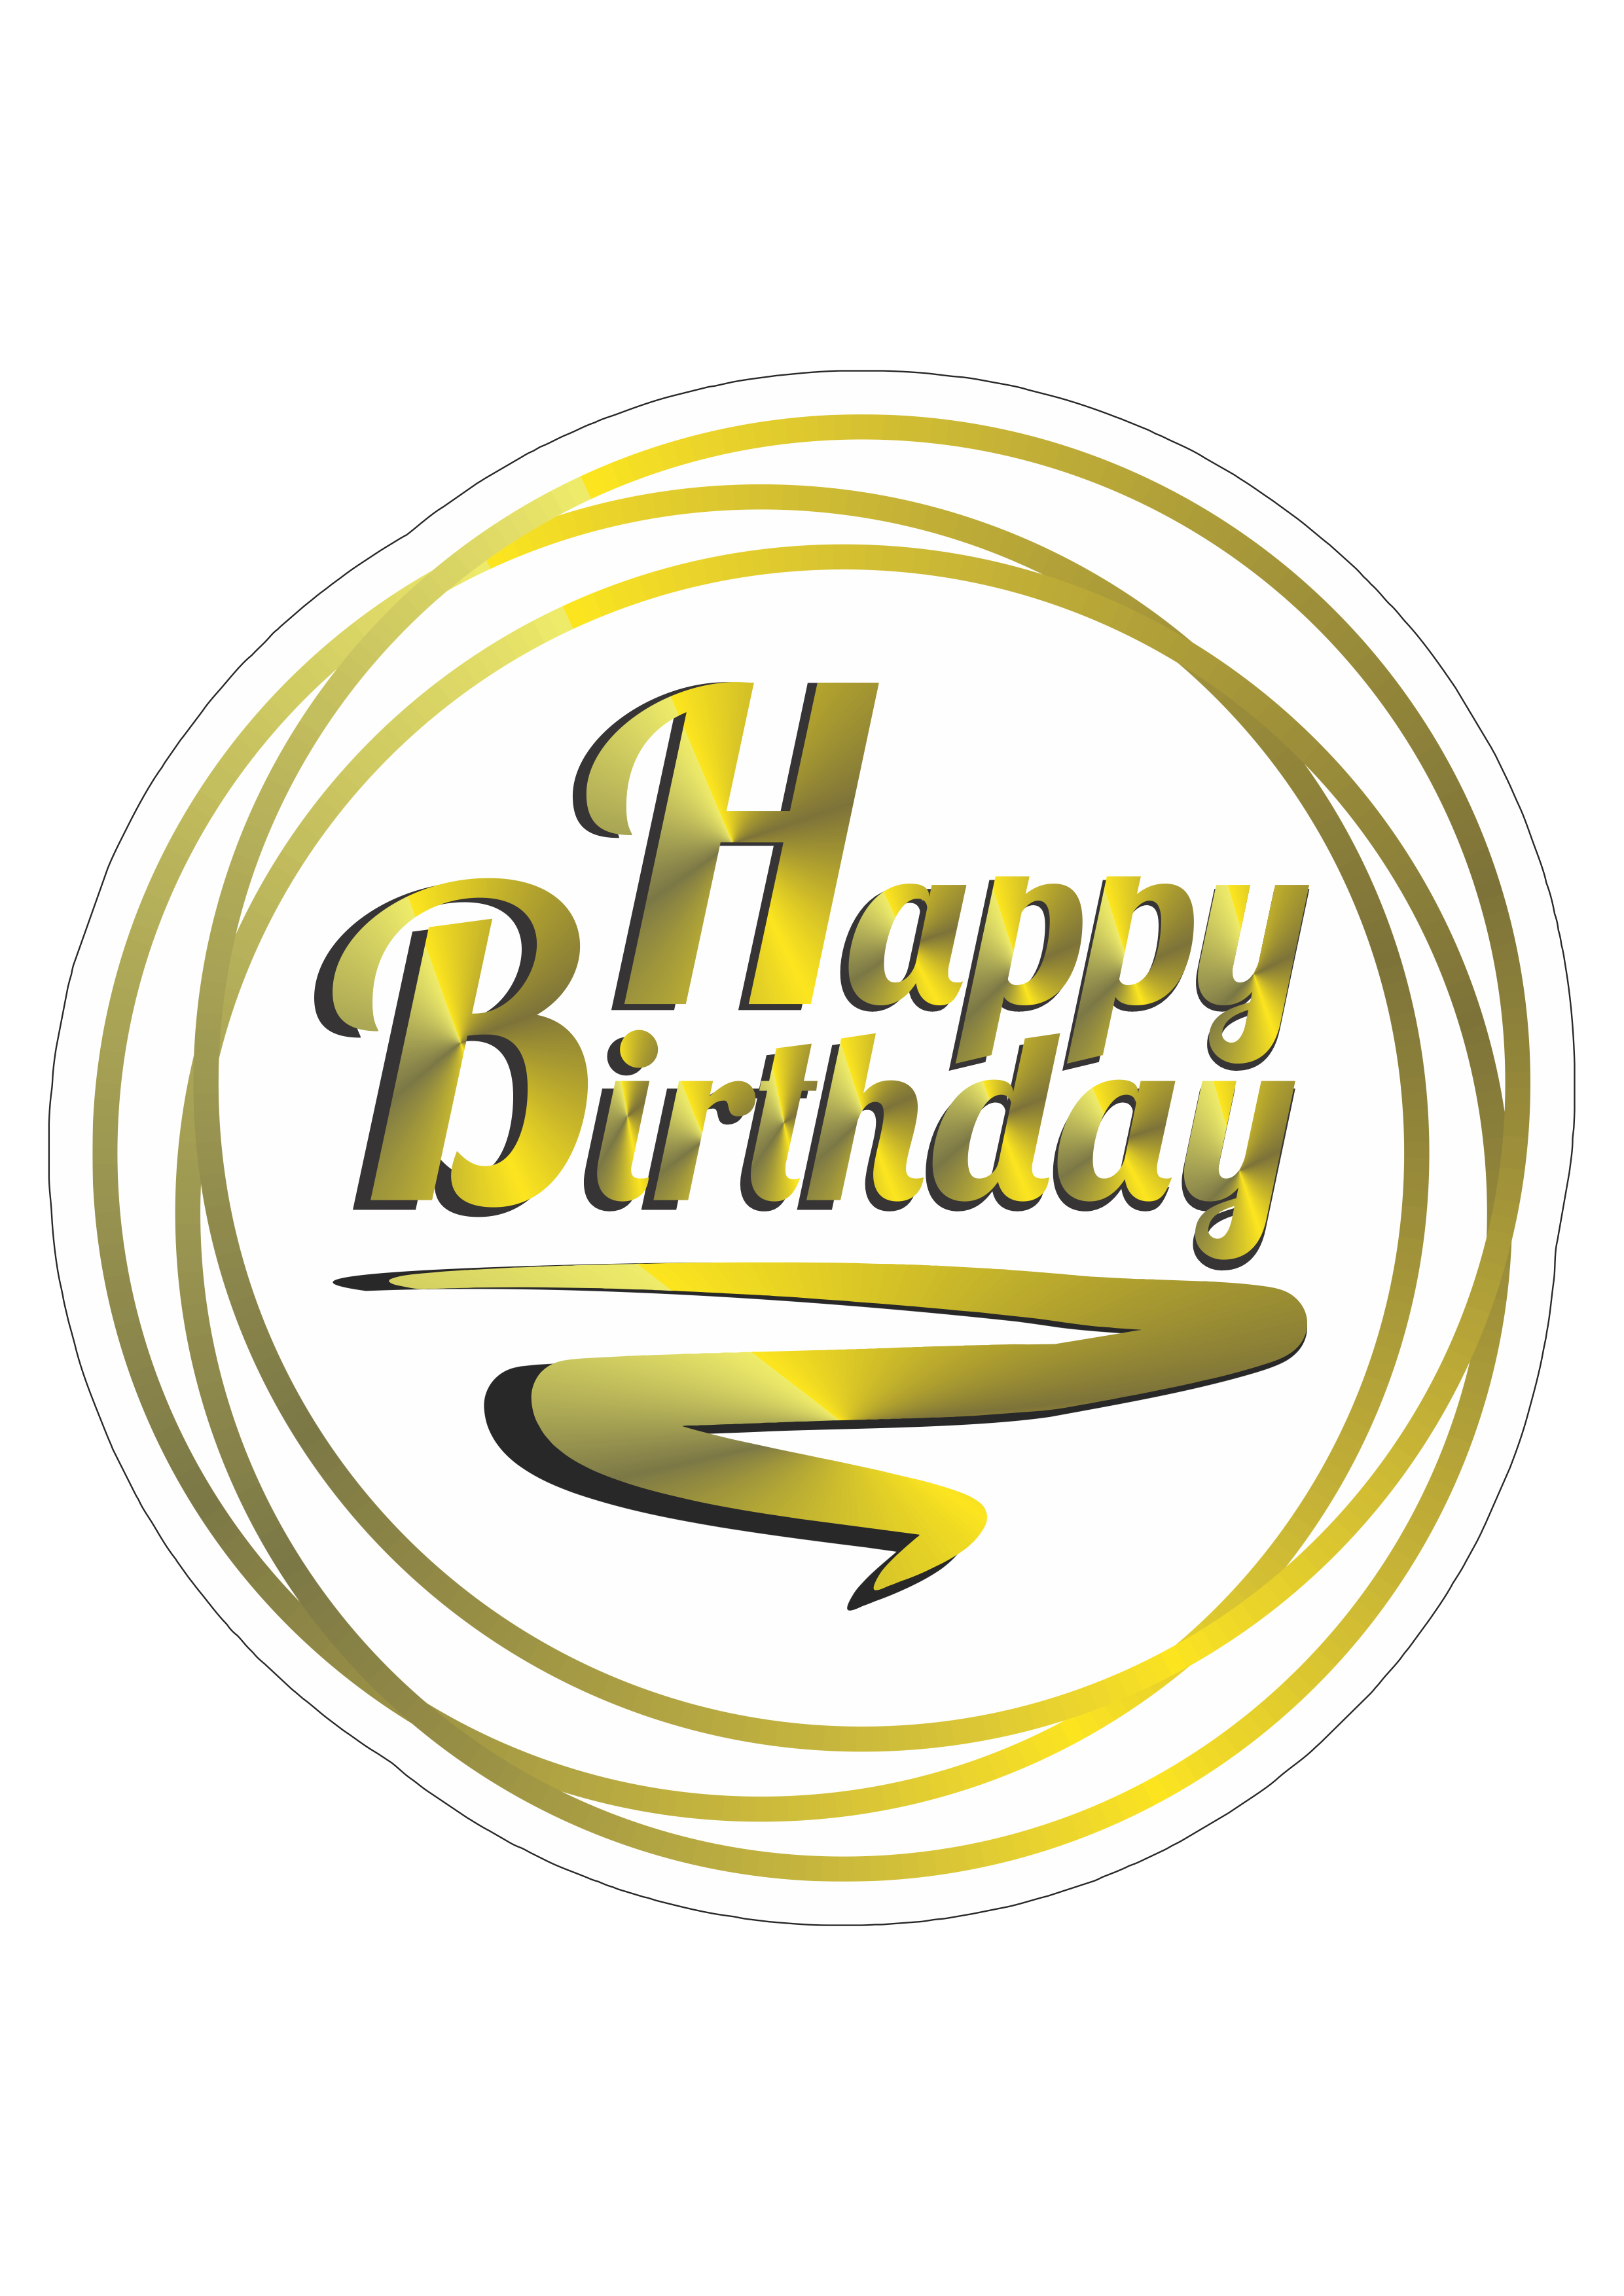 Happy birthday golden logo